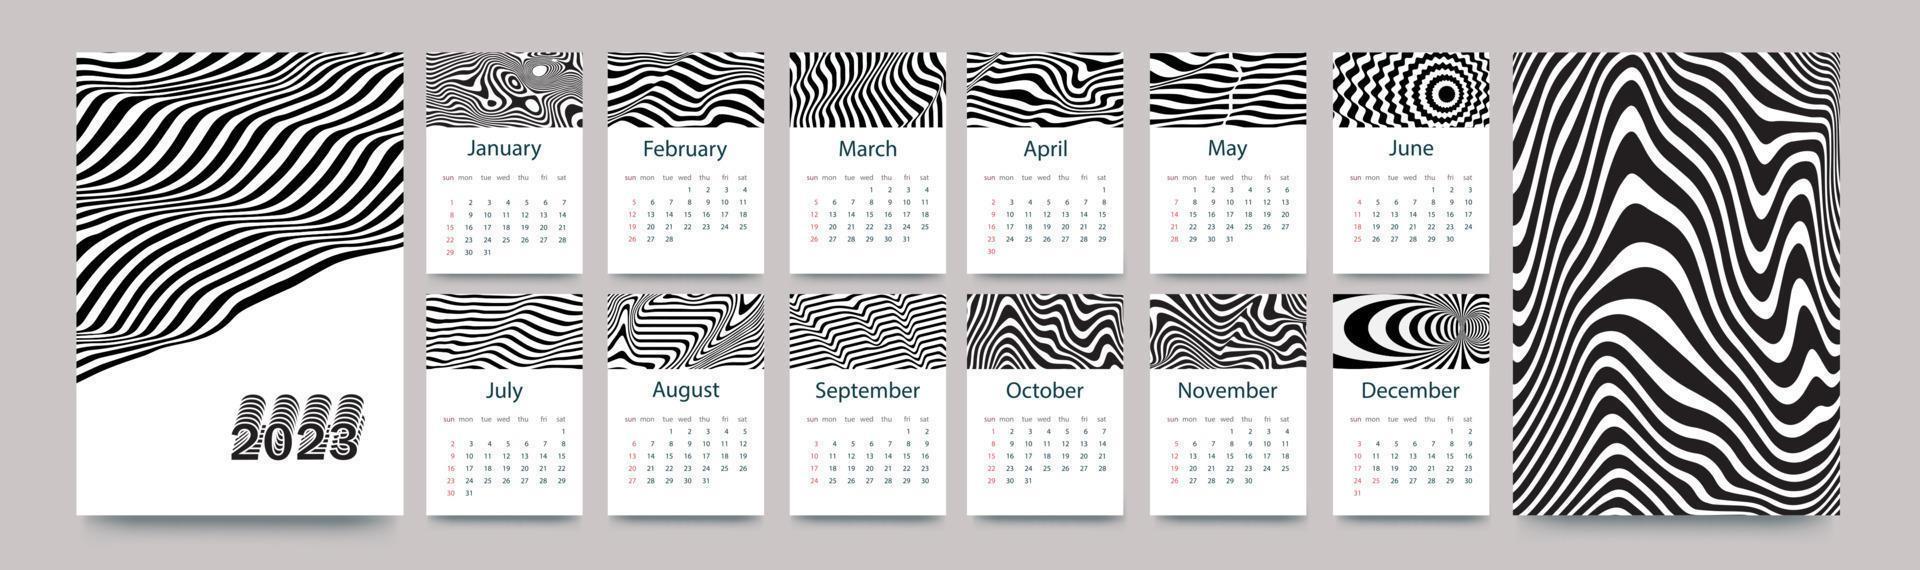 kalendermall för 2023. vertikal design med svarta och vita linjer. redigerbar sidmall med a4-illustrationer, set om 12 månader med omslag. vektor illustration.